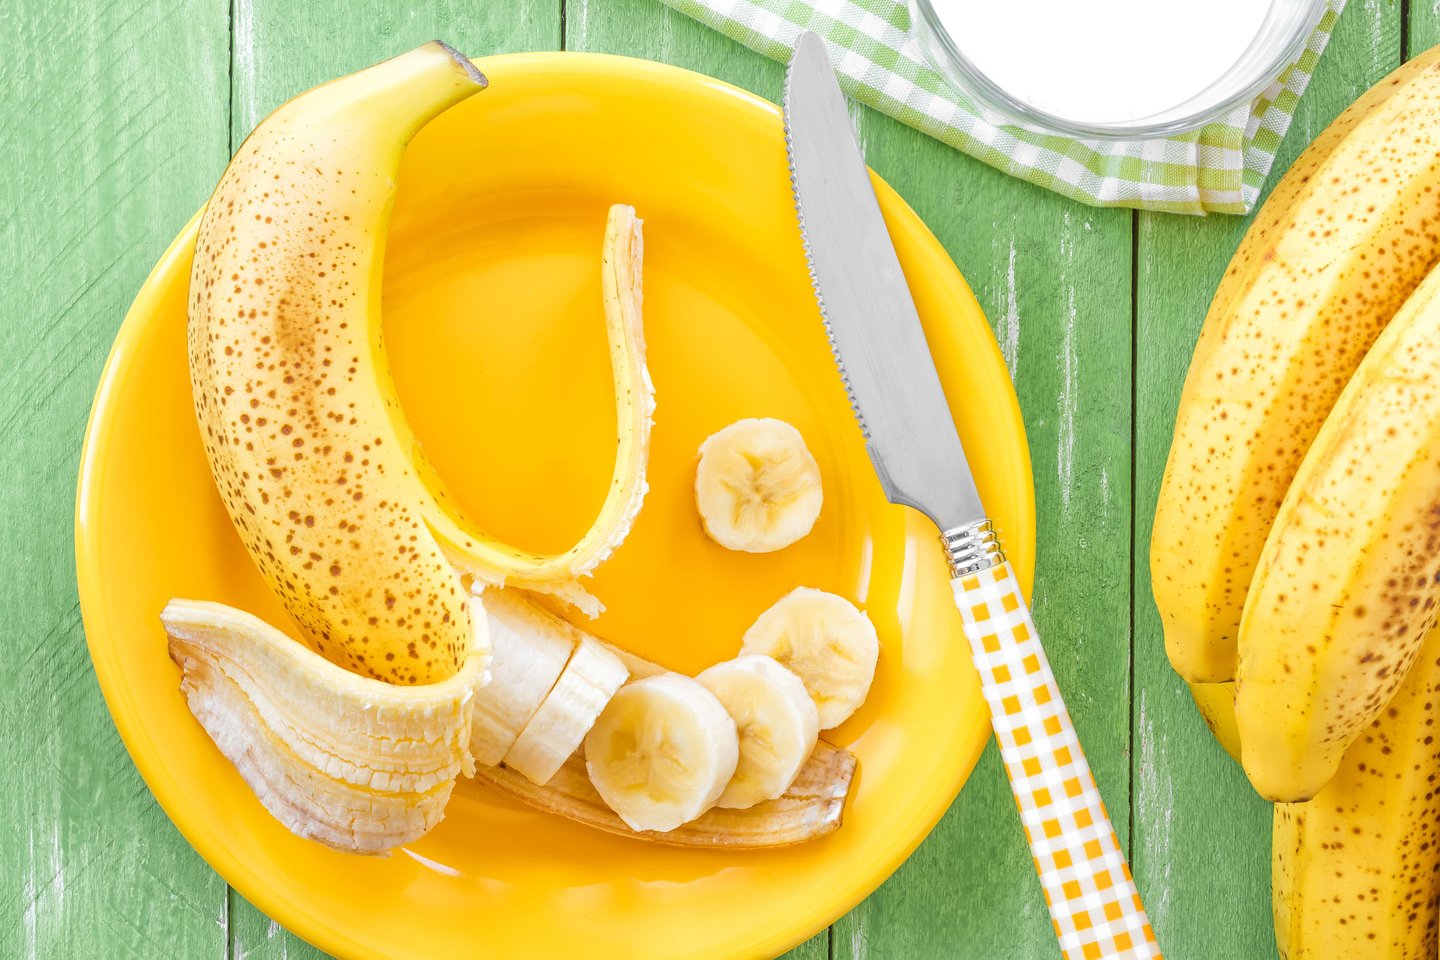 Bananas yra pats populiariausias vaisius Lietuvoje ir visame pasaulyje.<br>123rf nuotr.